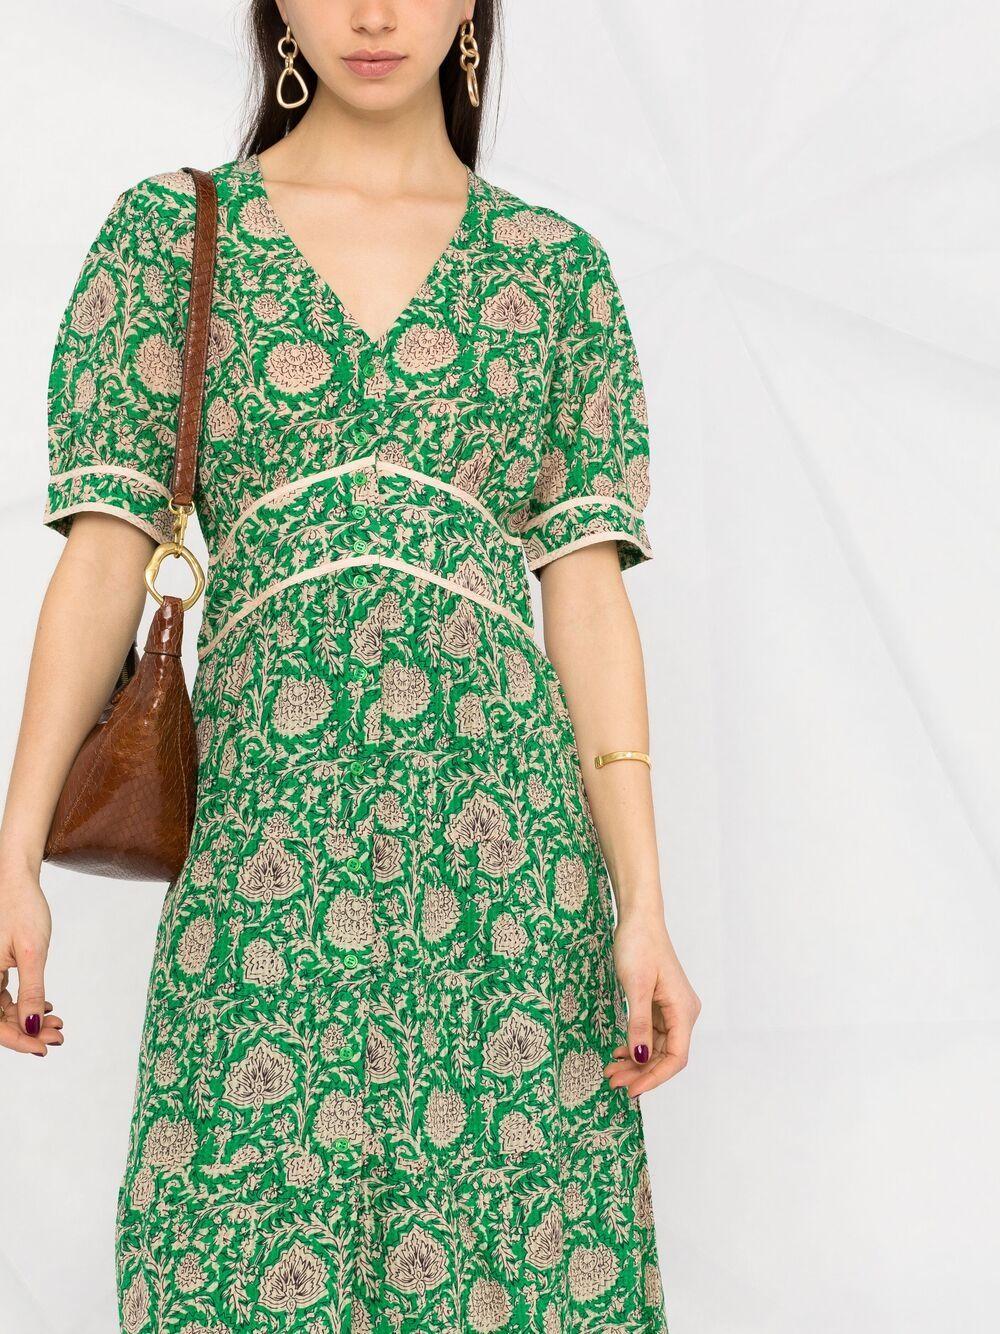 Ba&sh Plume Floral-print Midi Dress in Green | Lyst